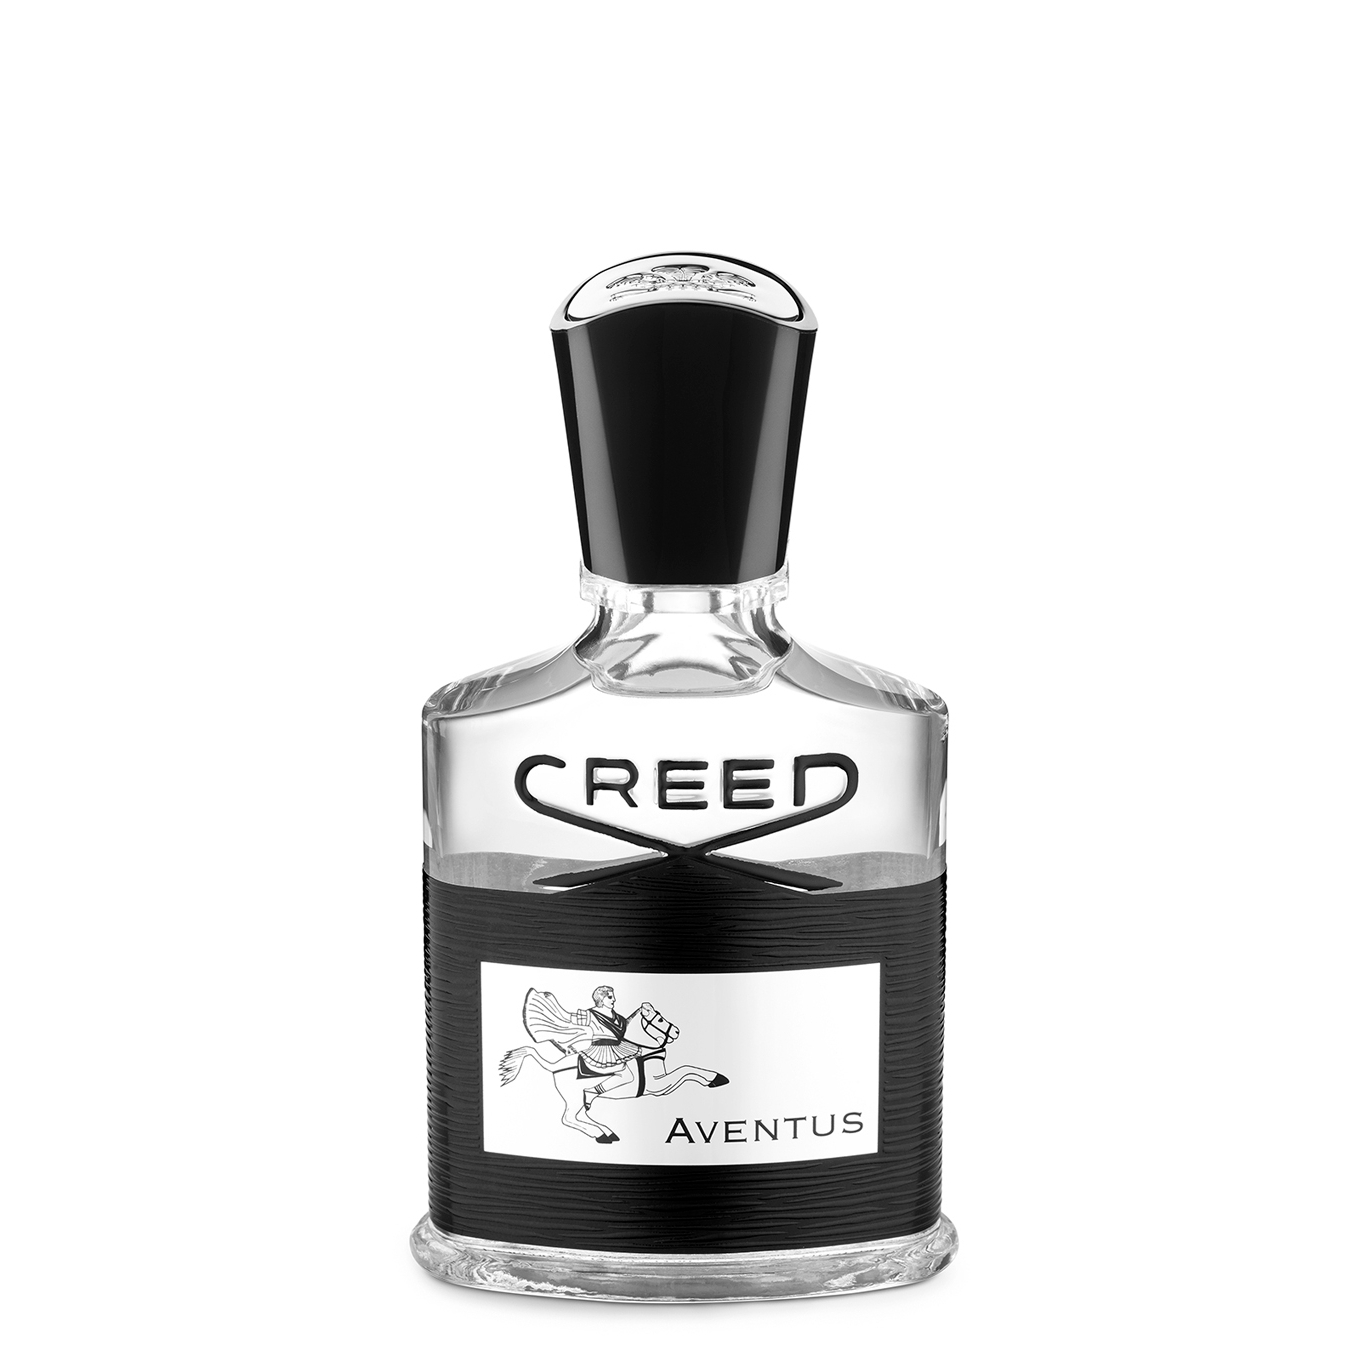 27 " Мужские ароматы, которые ставят под сомнение бинарный аромат» /></p>
<p> Creed Aventus Eau de Parfum £195 </p>
<p class=